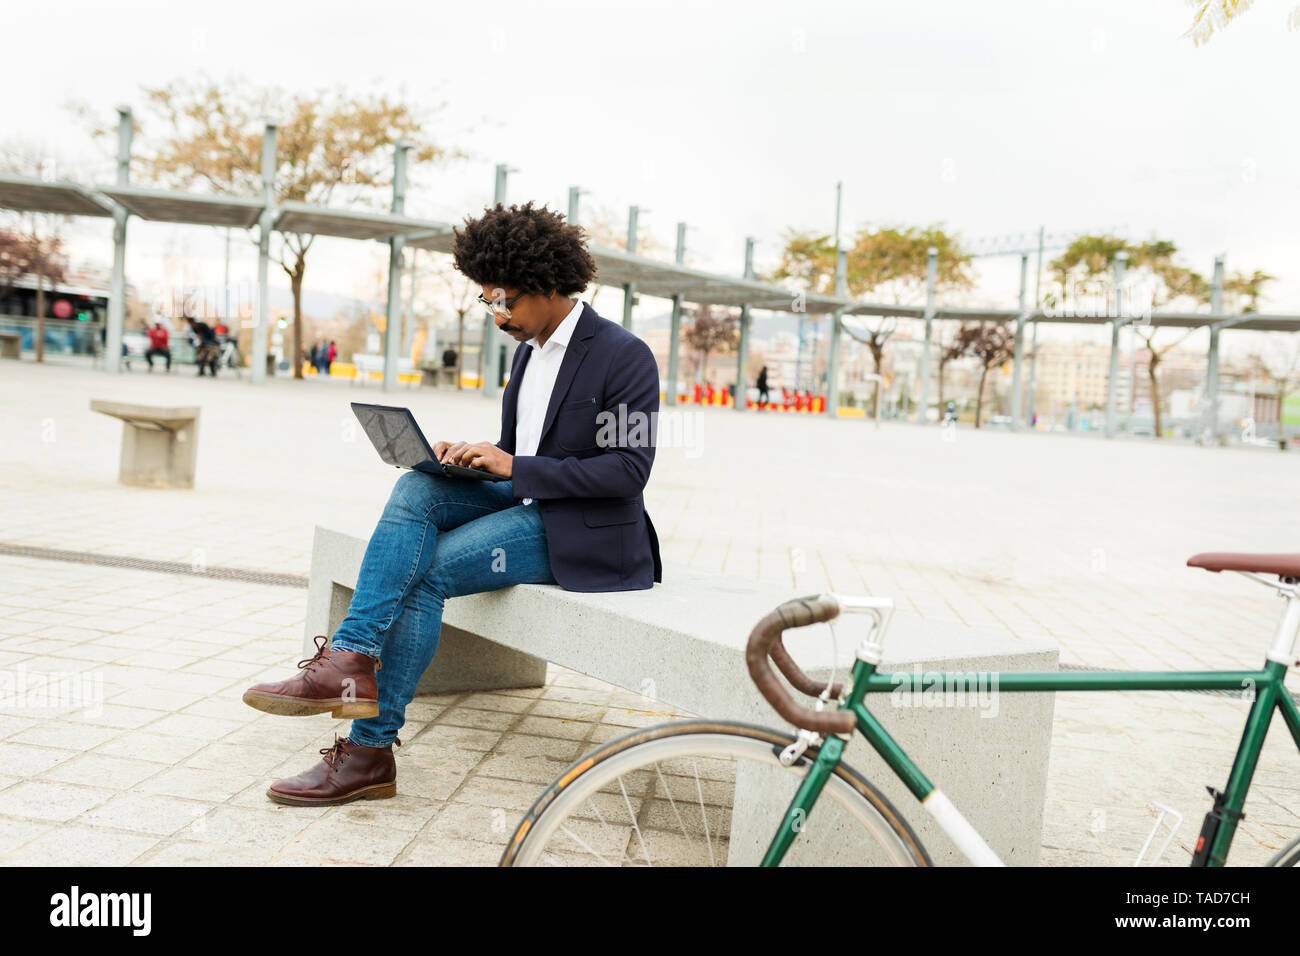 Spanien, Barcelona, Geschäftsmann mit dem Fahrrad in der Stadt sitzt auf der Bank mit Laptop Stockfoto